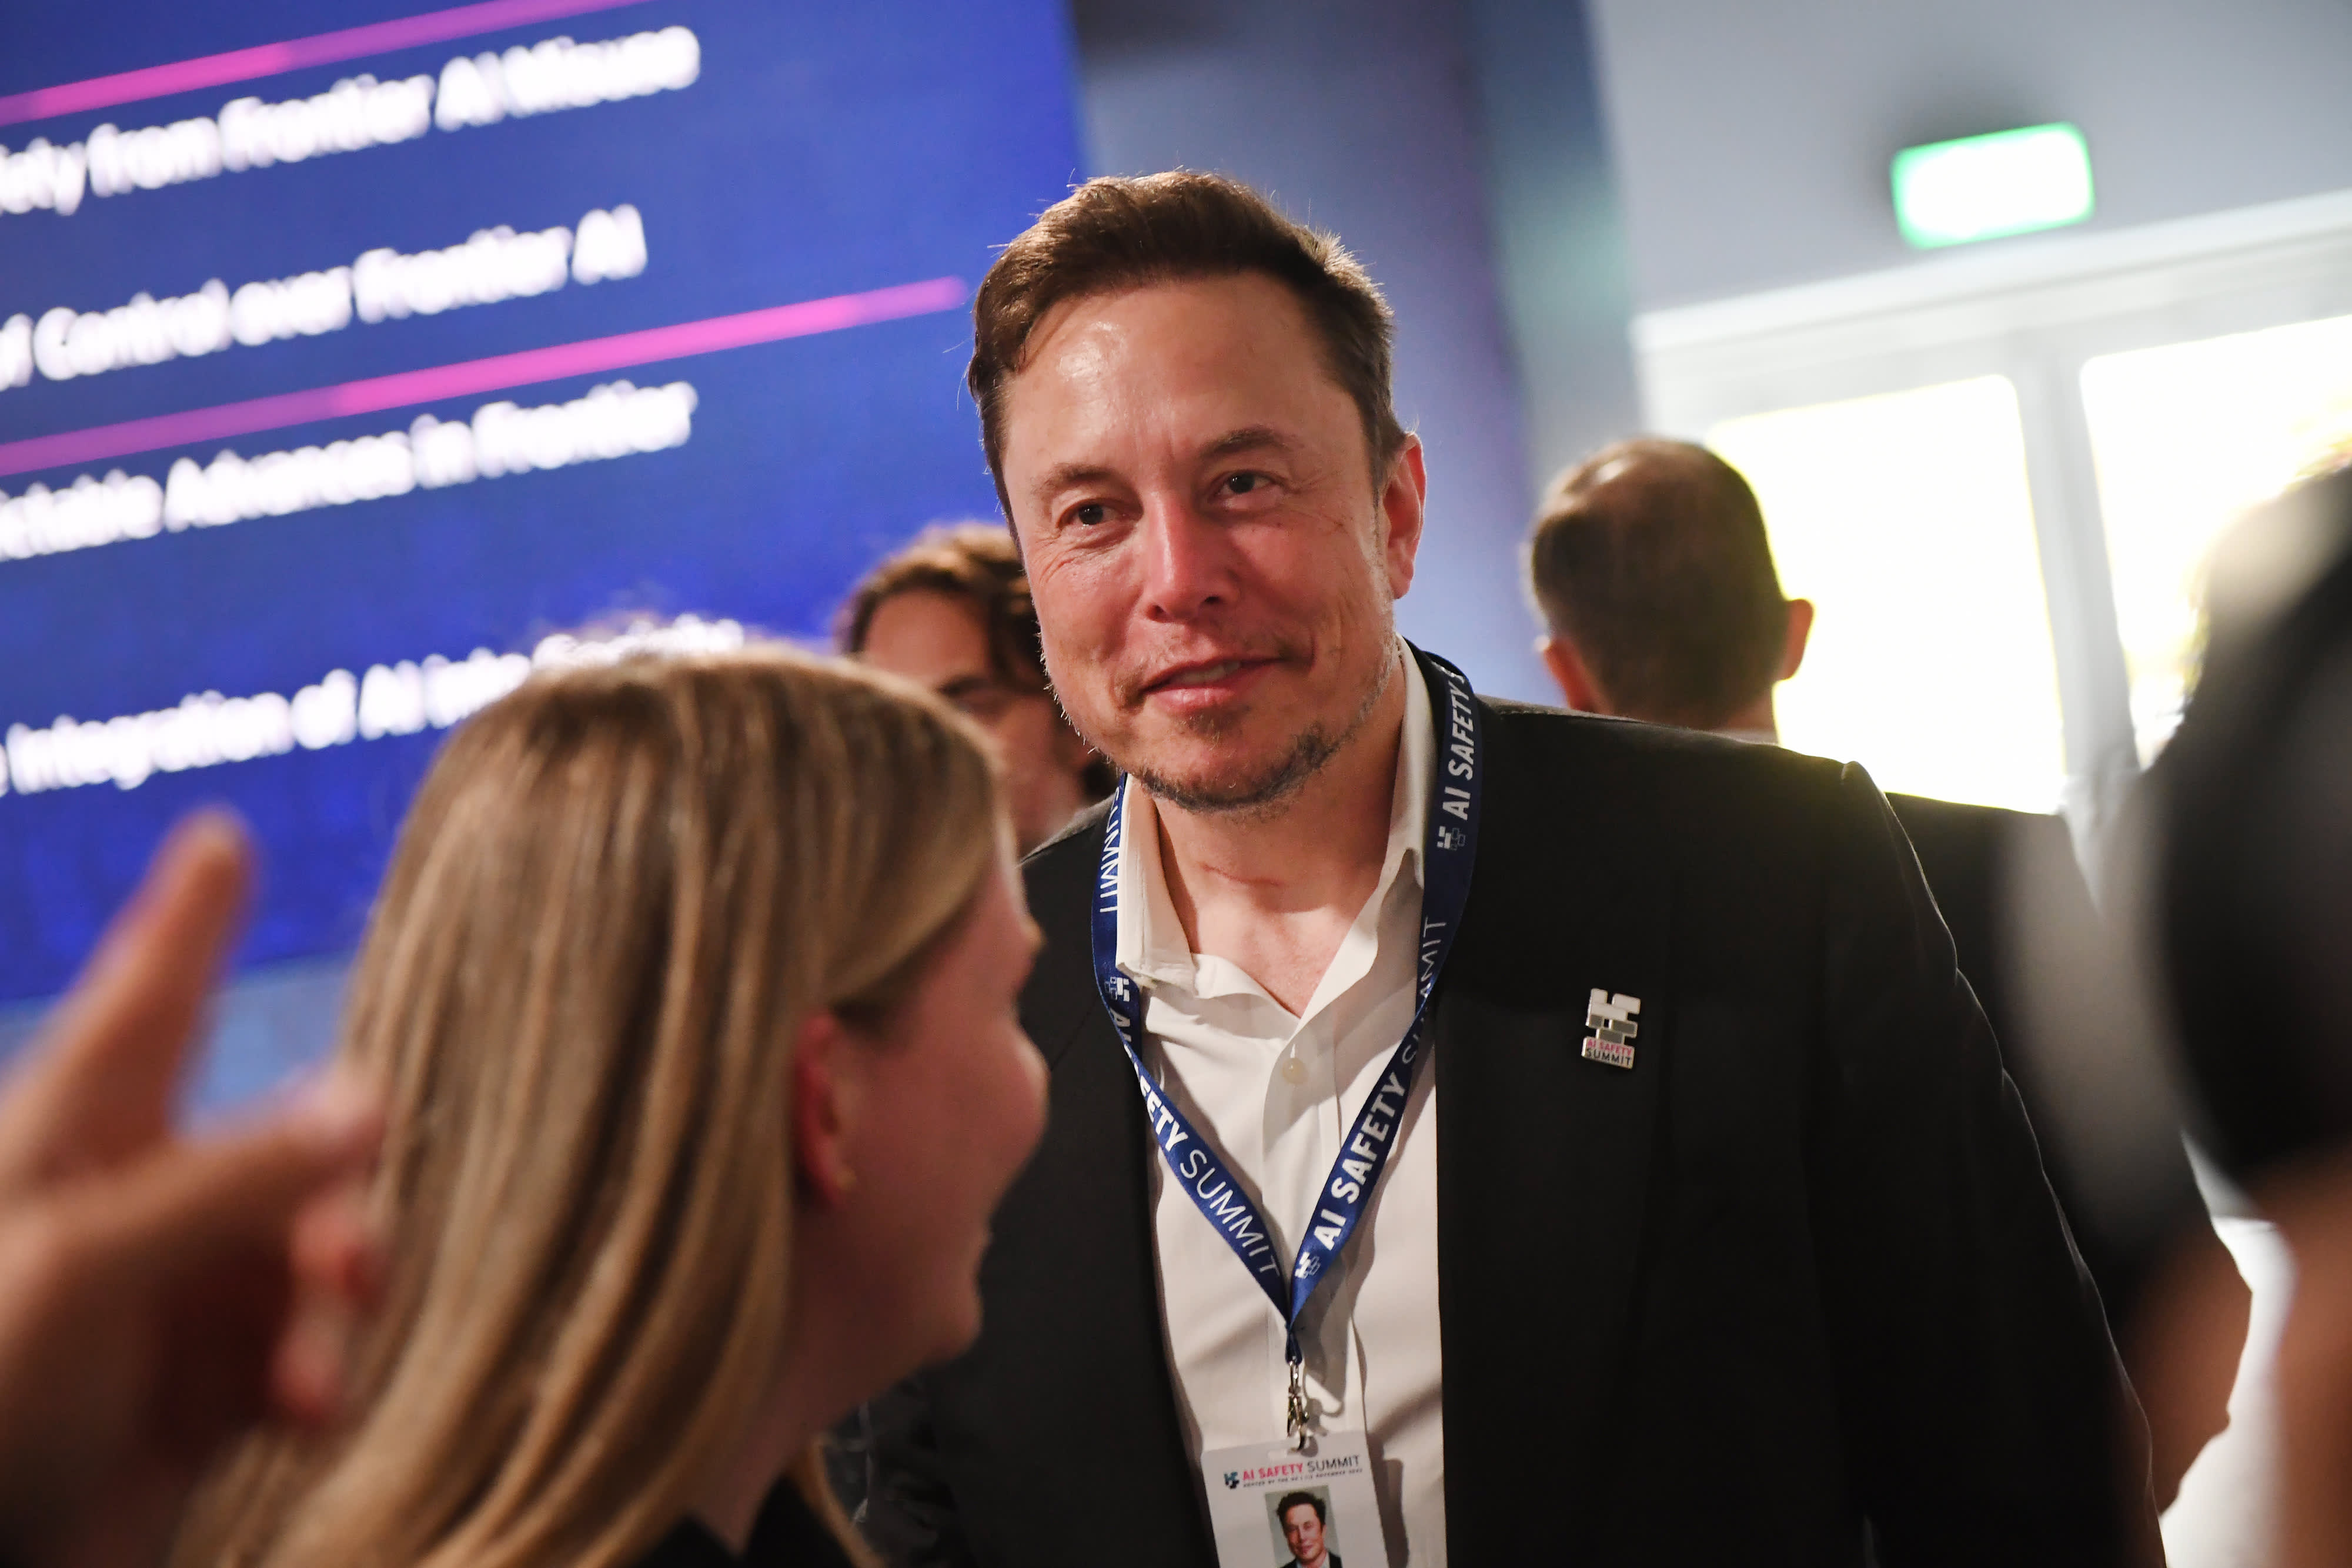 Elon Musk prevede che, grazie all'intelligenza artificiale, in futuro non ci sarà più bisogno di lavorare